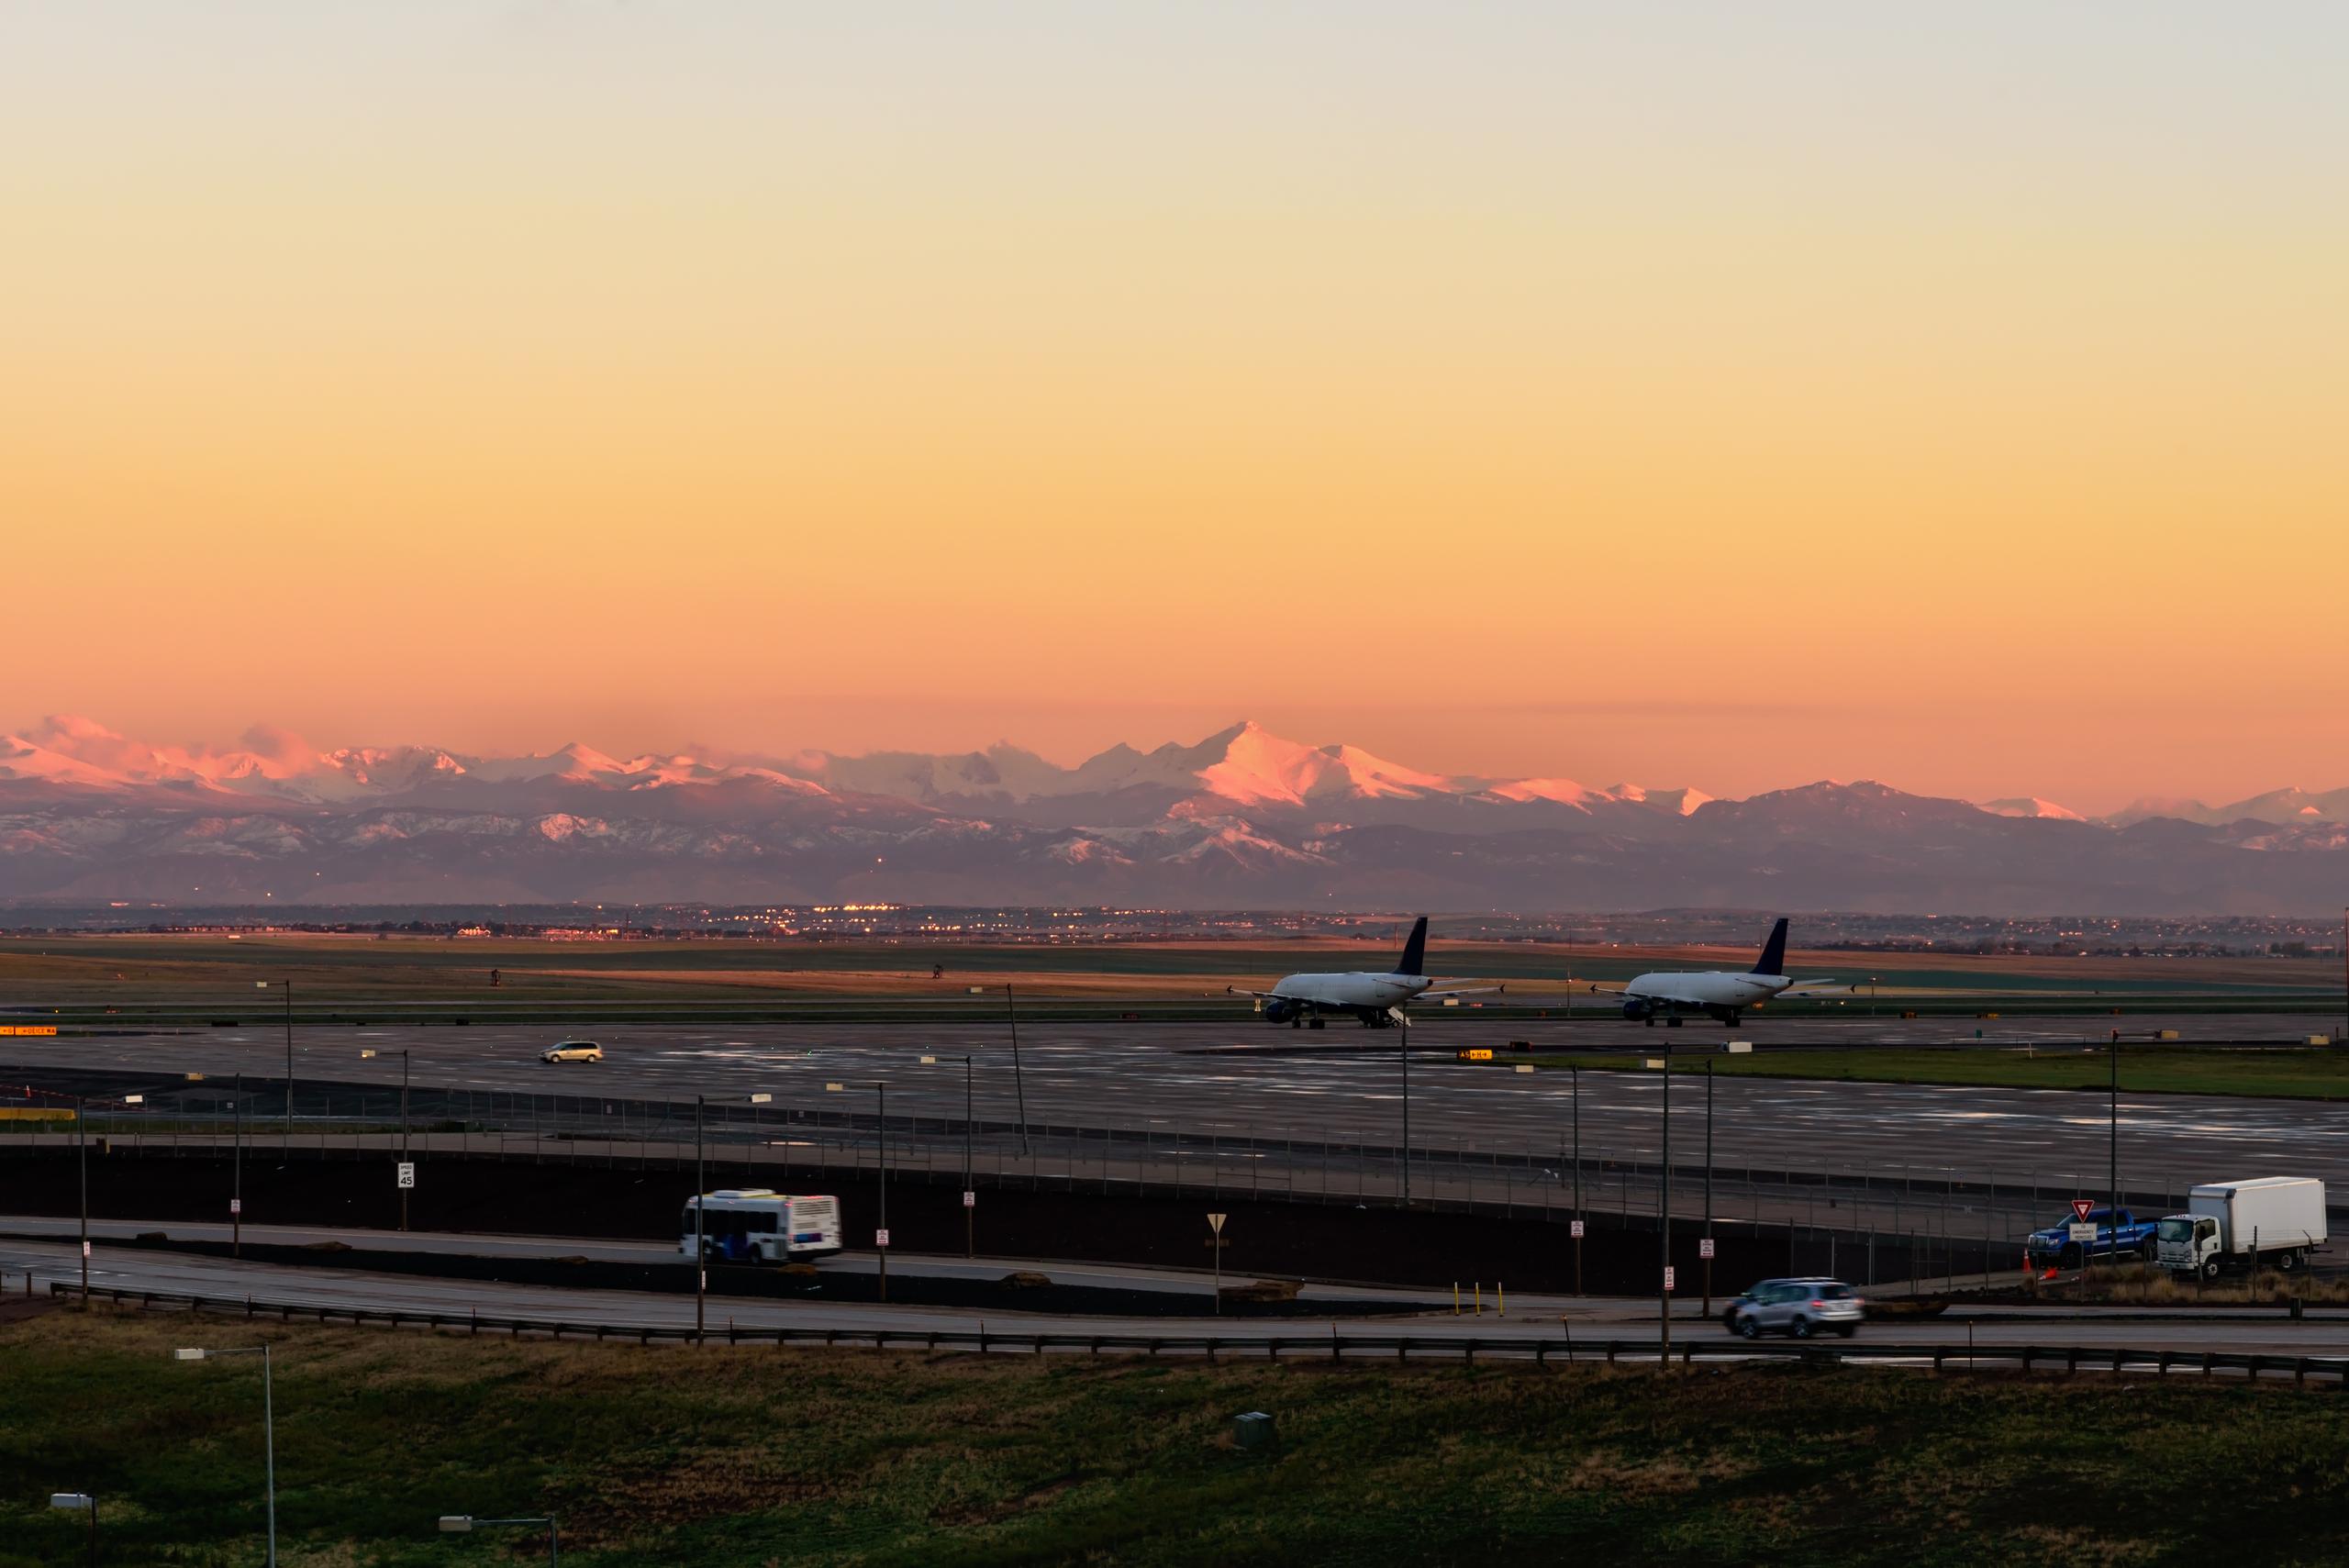 Una vez que se reanudaron los vuelos, las demoras continuaron y afectaron los vuelos con destino a Denver en los aeropuertos de todo Estados Unidos.